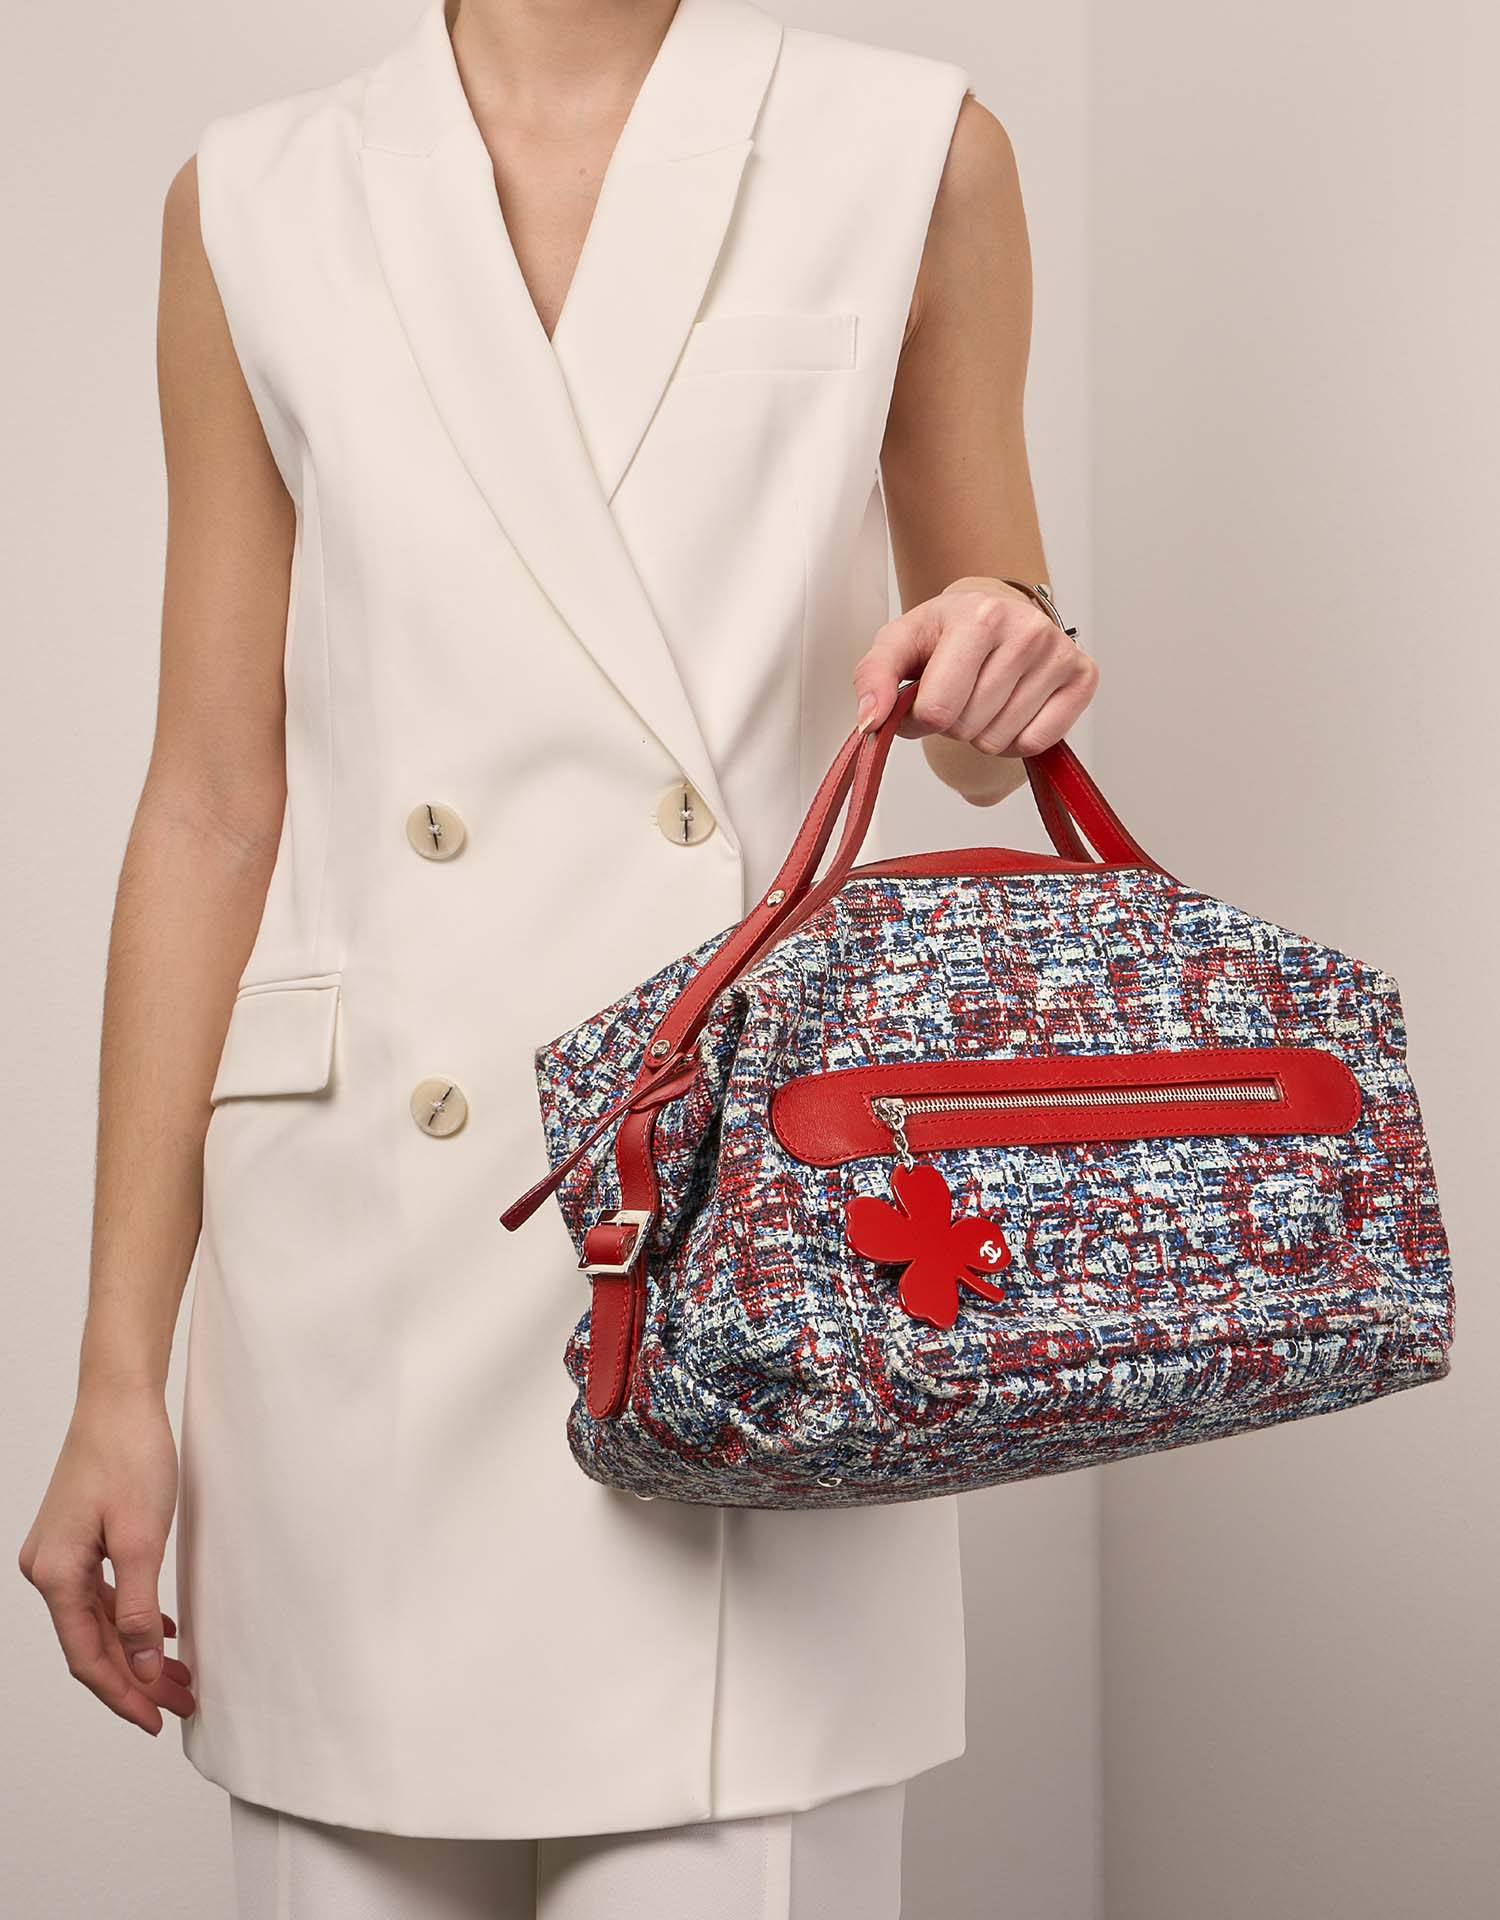 Chanel DuffleBag Mixed Sizes Worn | Verkaufen Sie Ihre Designer-Tasche auf Saclab.com